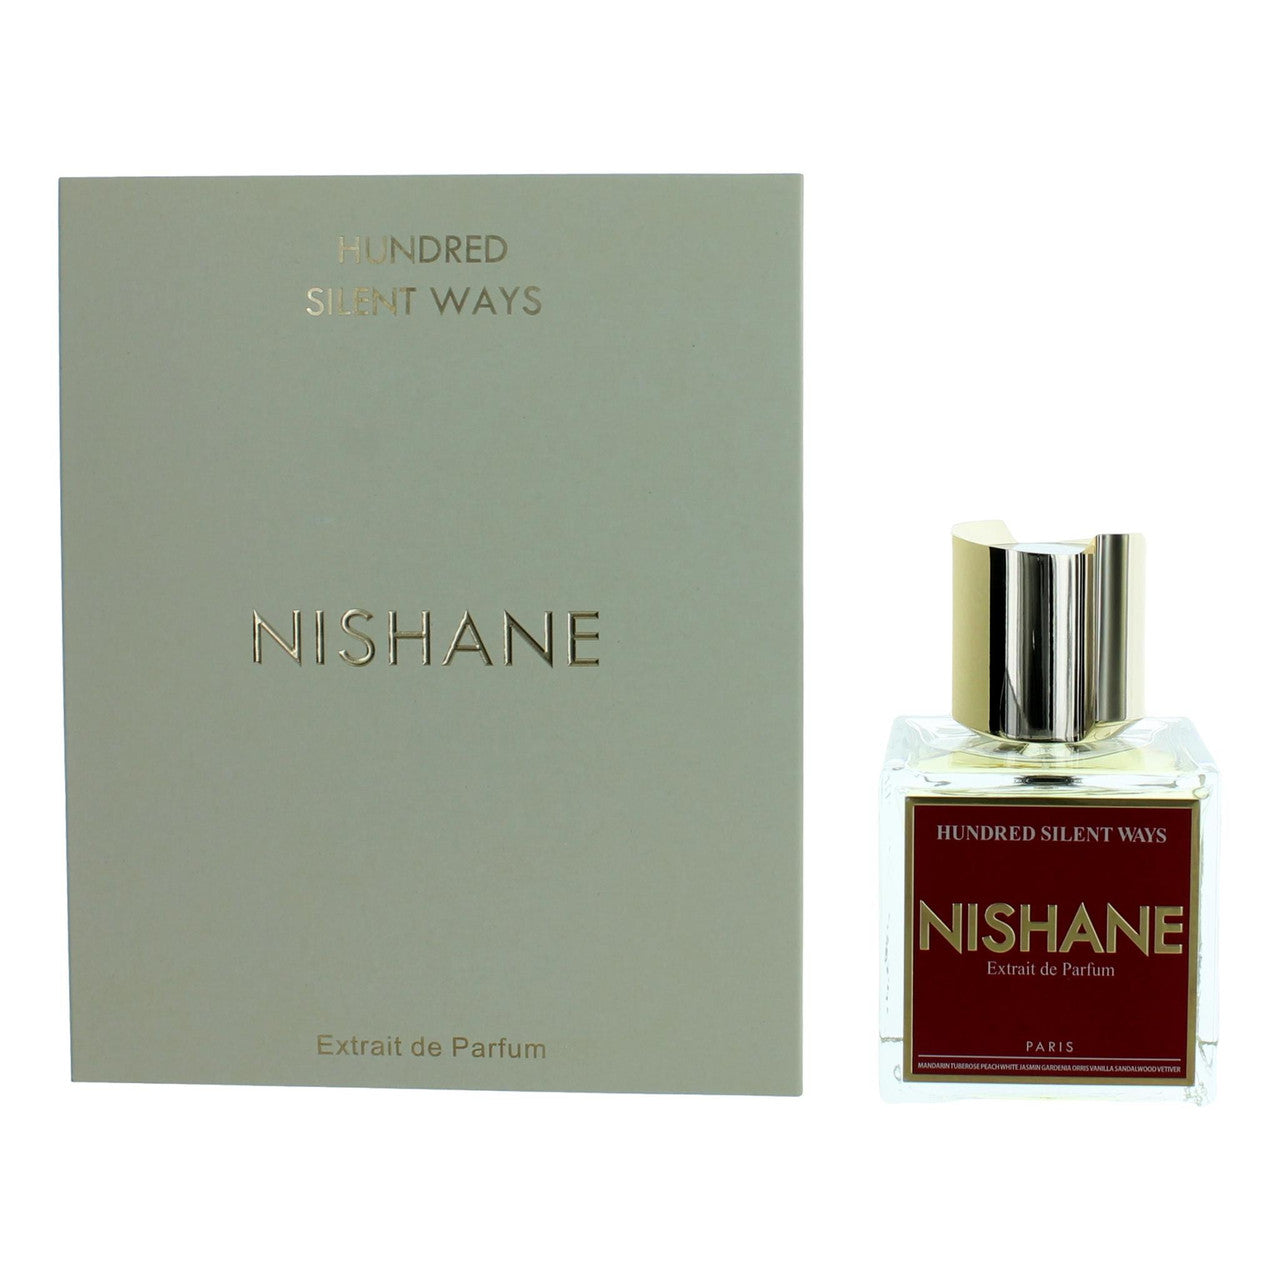 1.7 oz bottle of Nishane Hundred Silent Ways